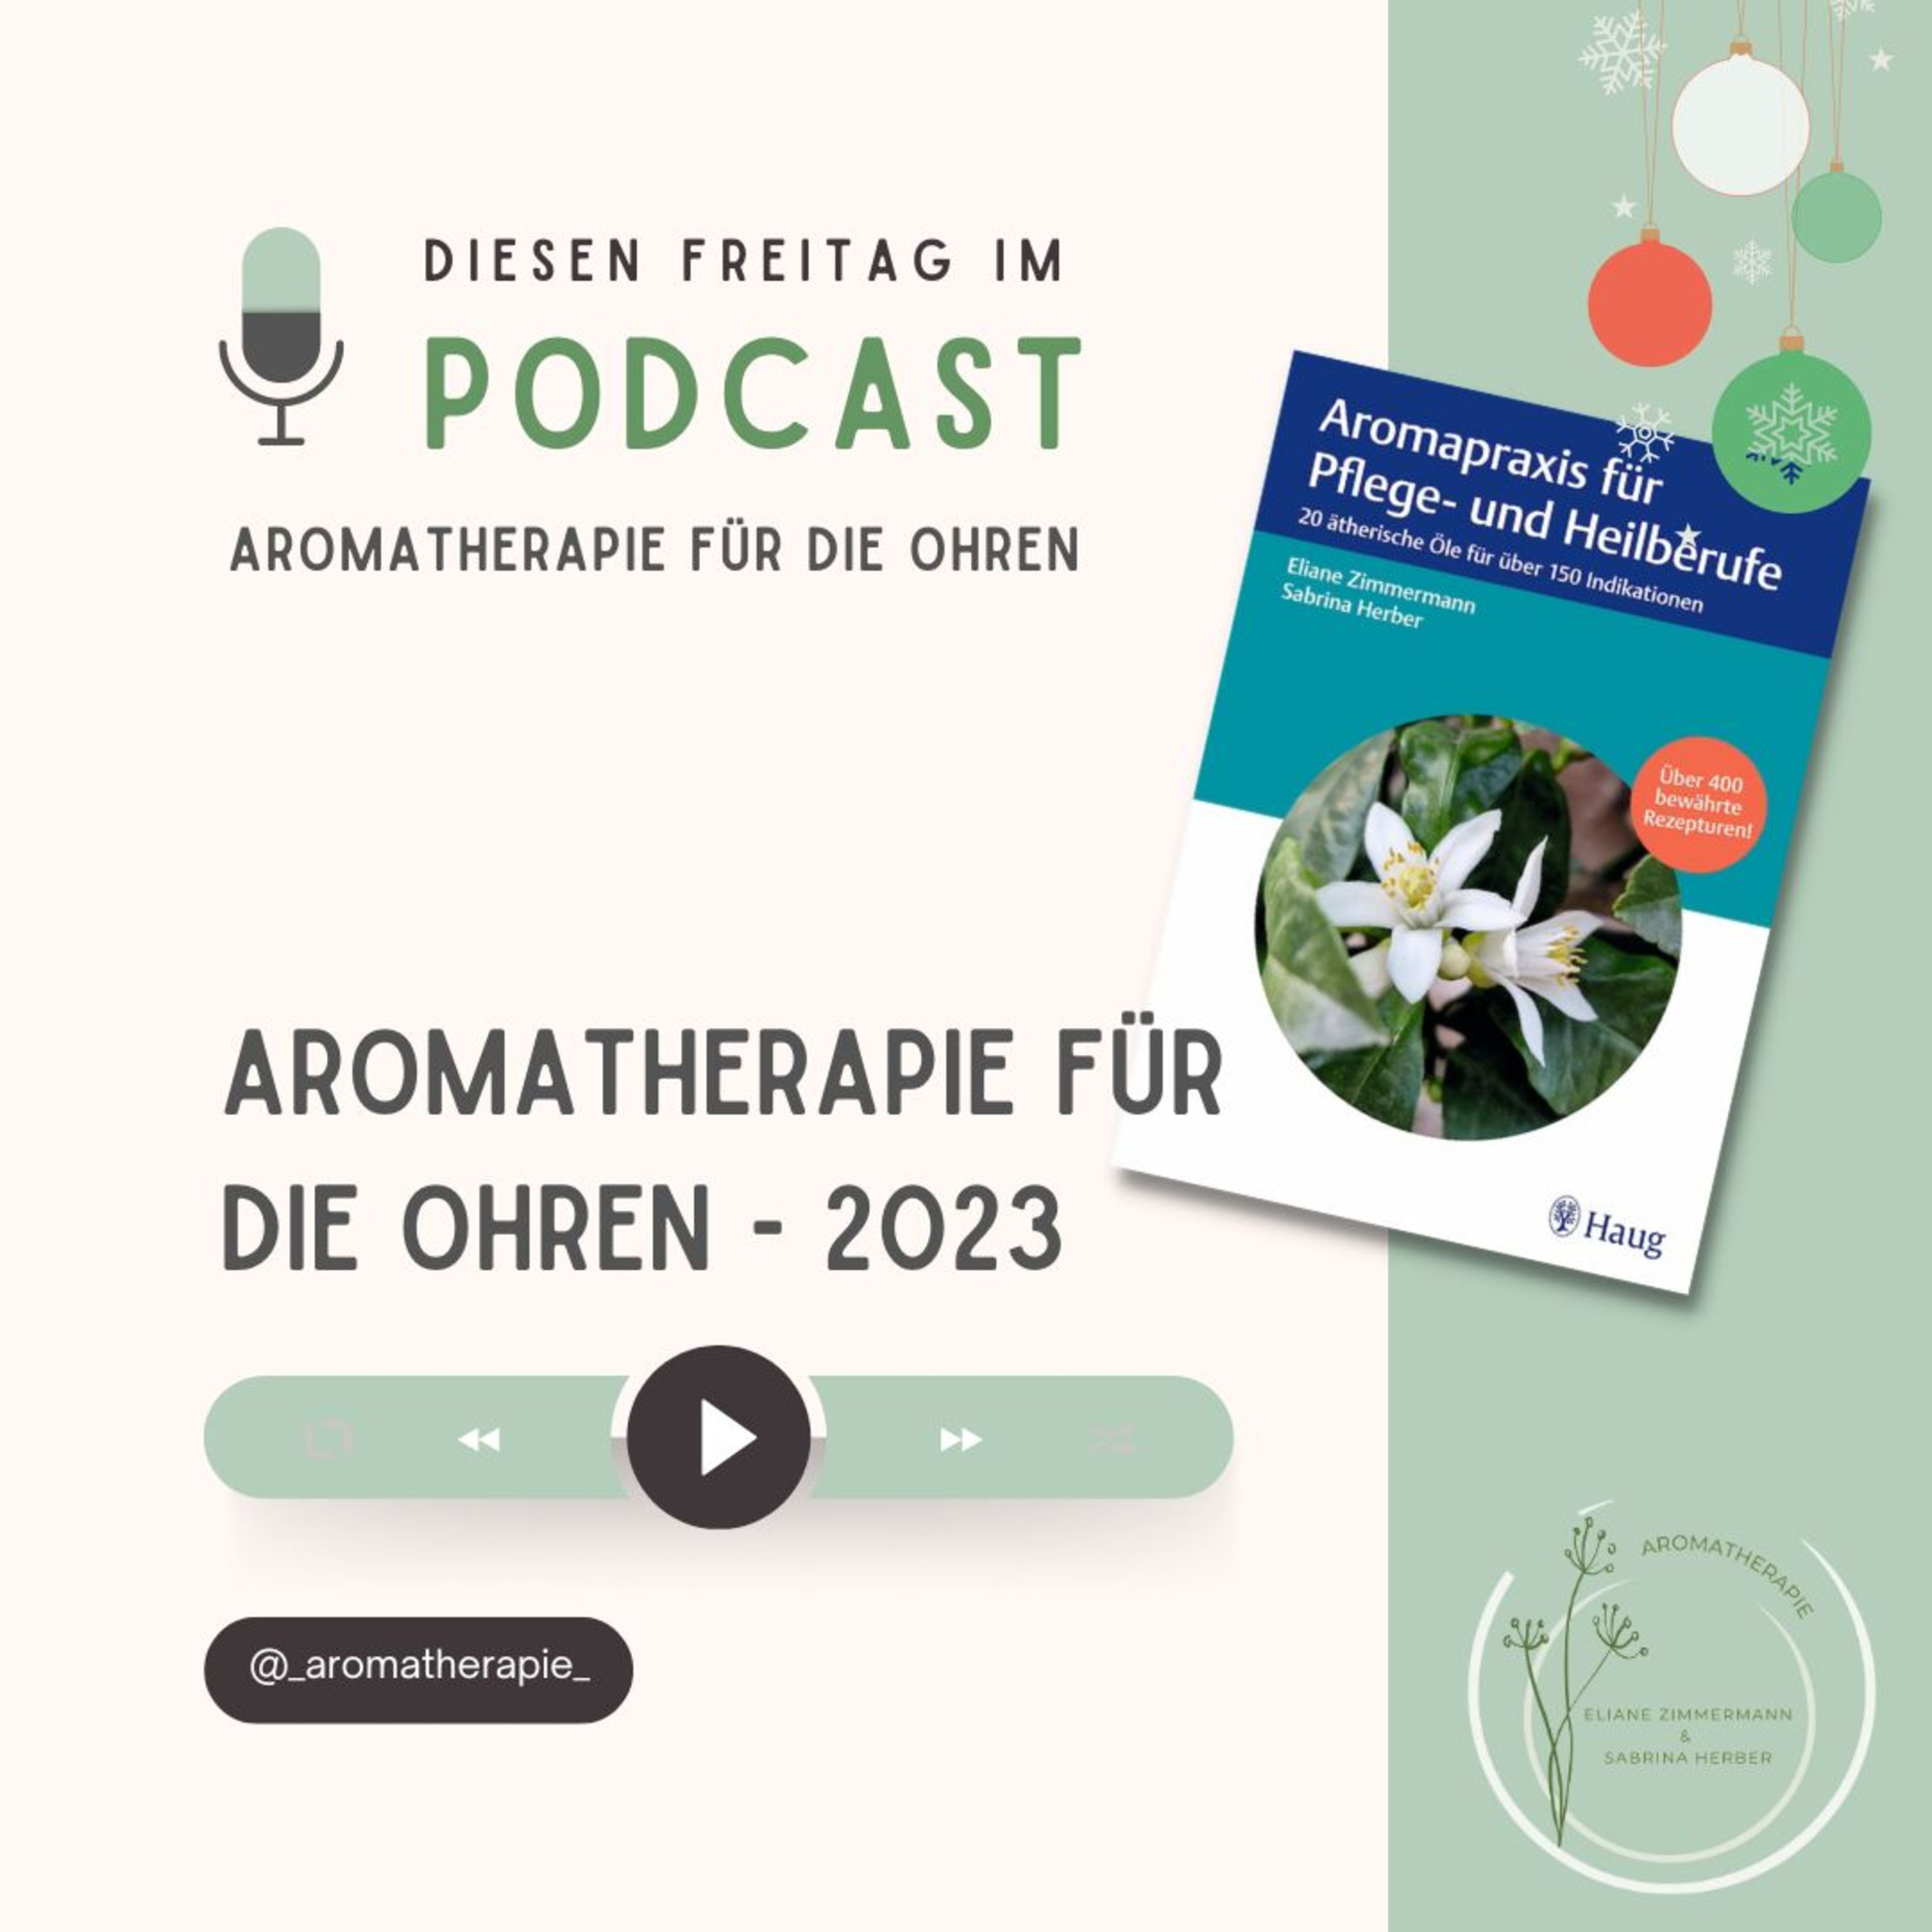 Aromatherapie für die Ohren mit Eliane Zimmermann & Sabrina Herber